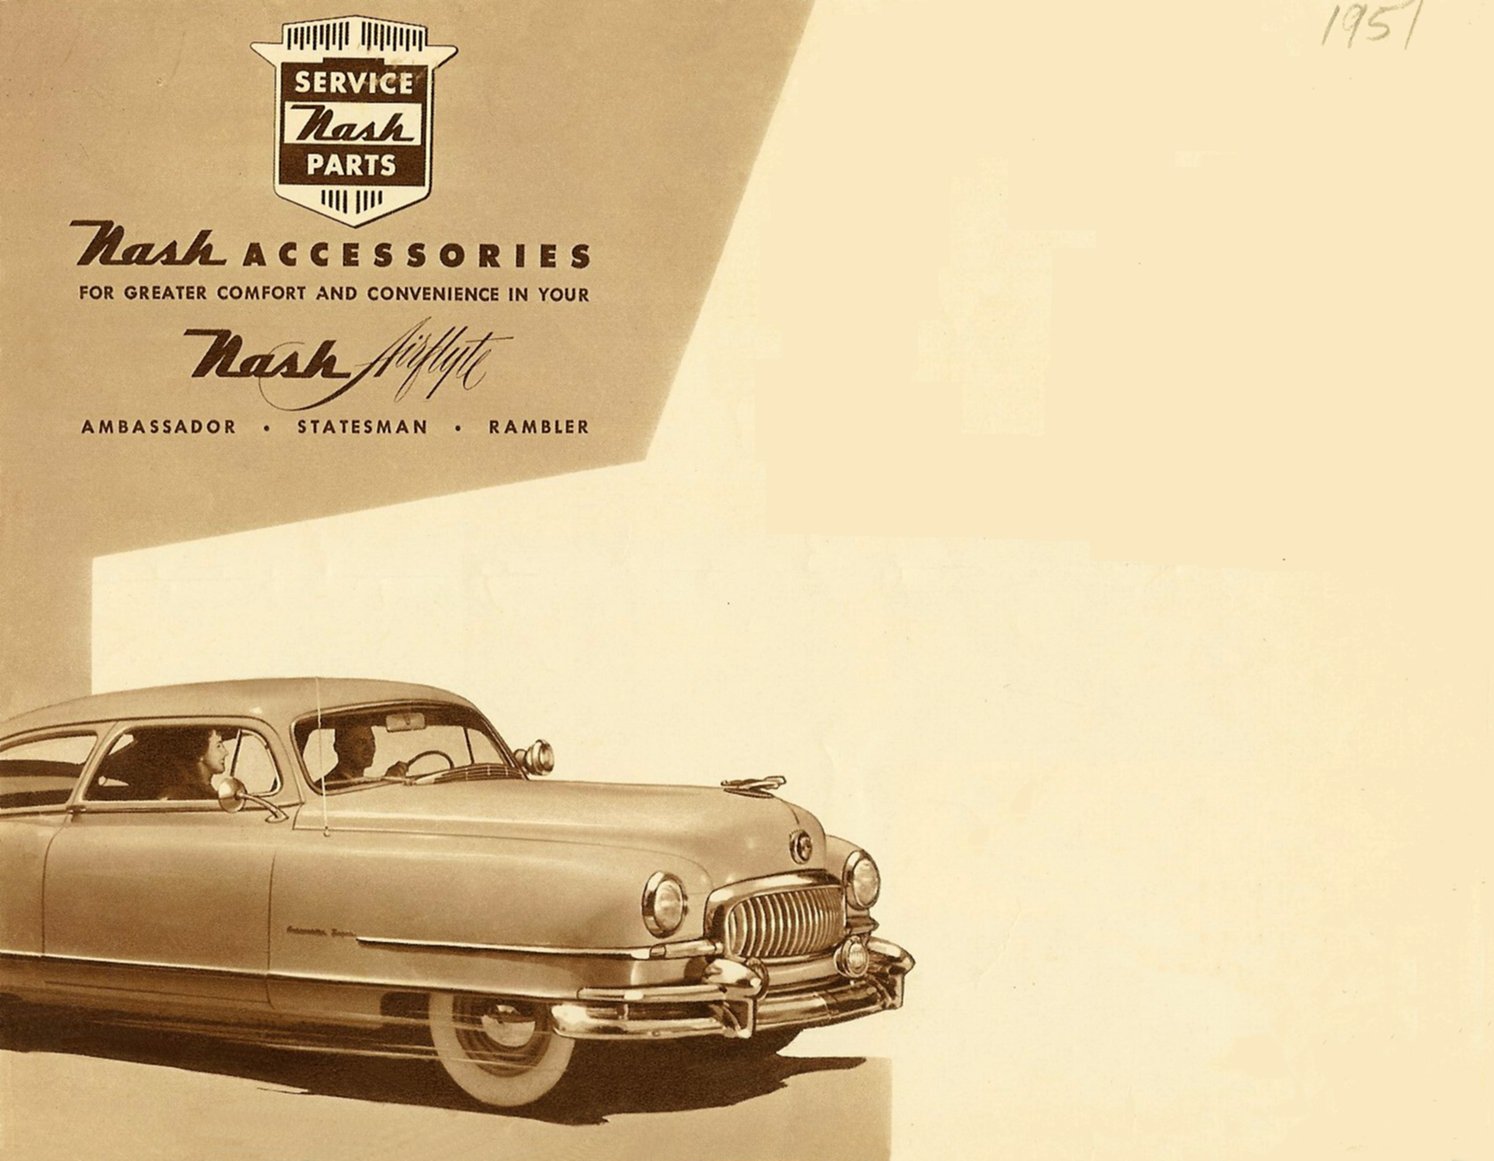 1951 Nash Accessories Folder